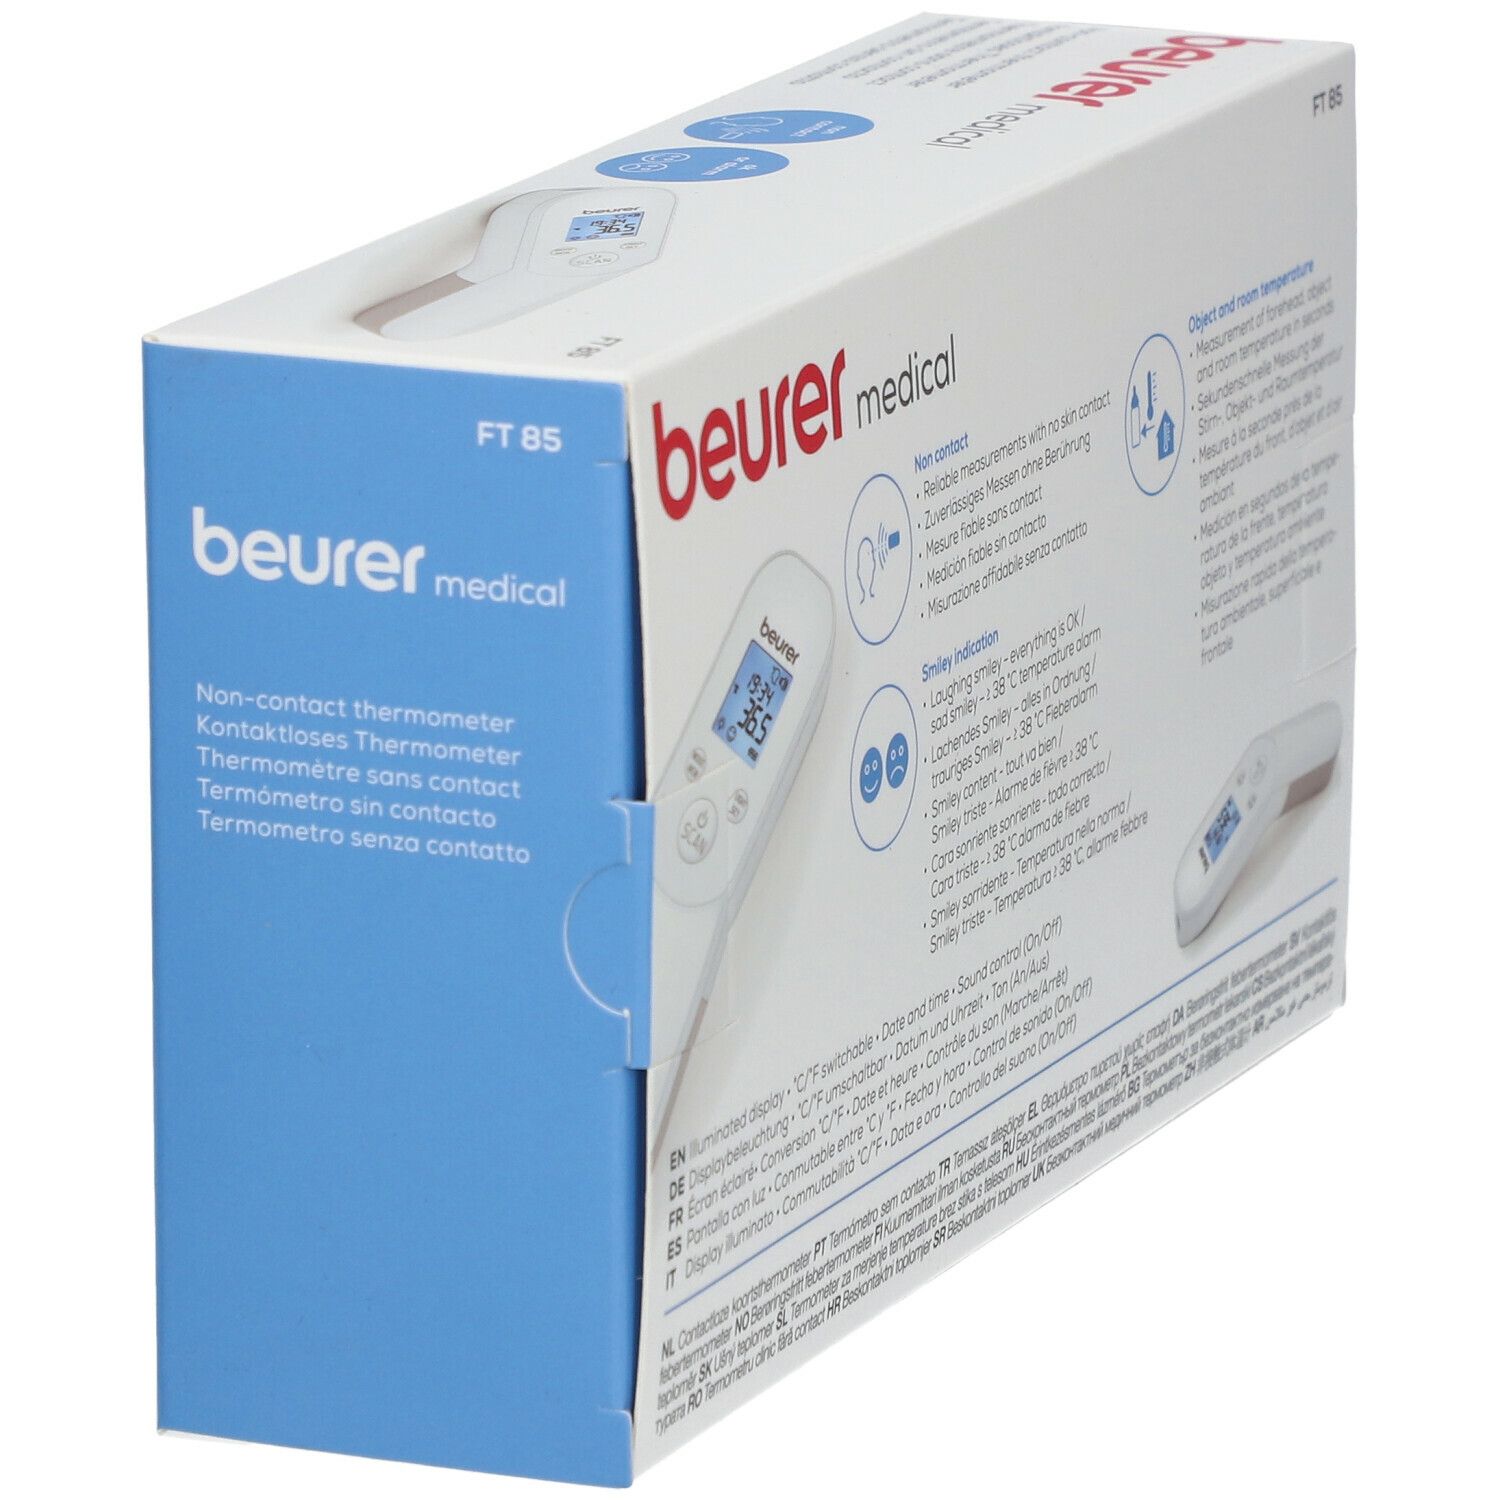 beurer kontaktloses Thermometer FT 85